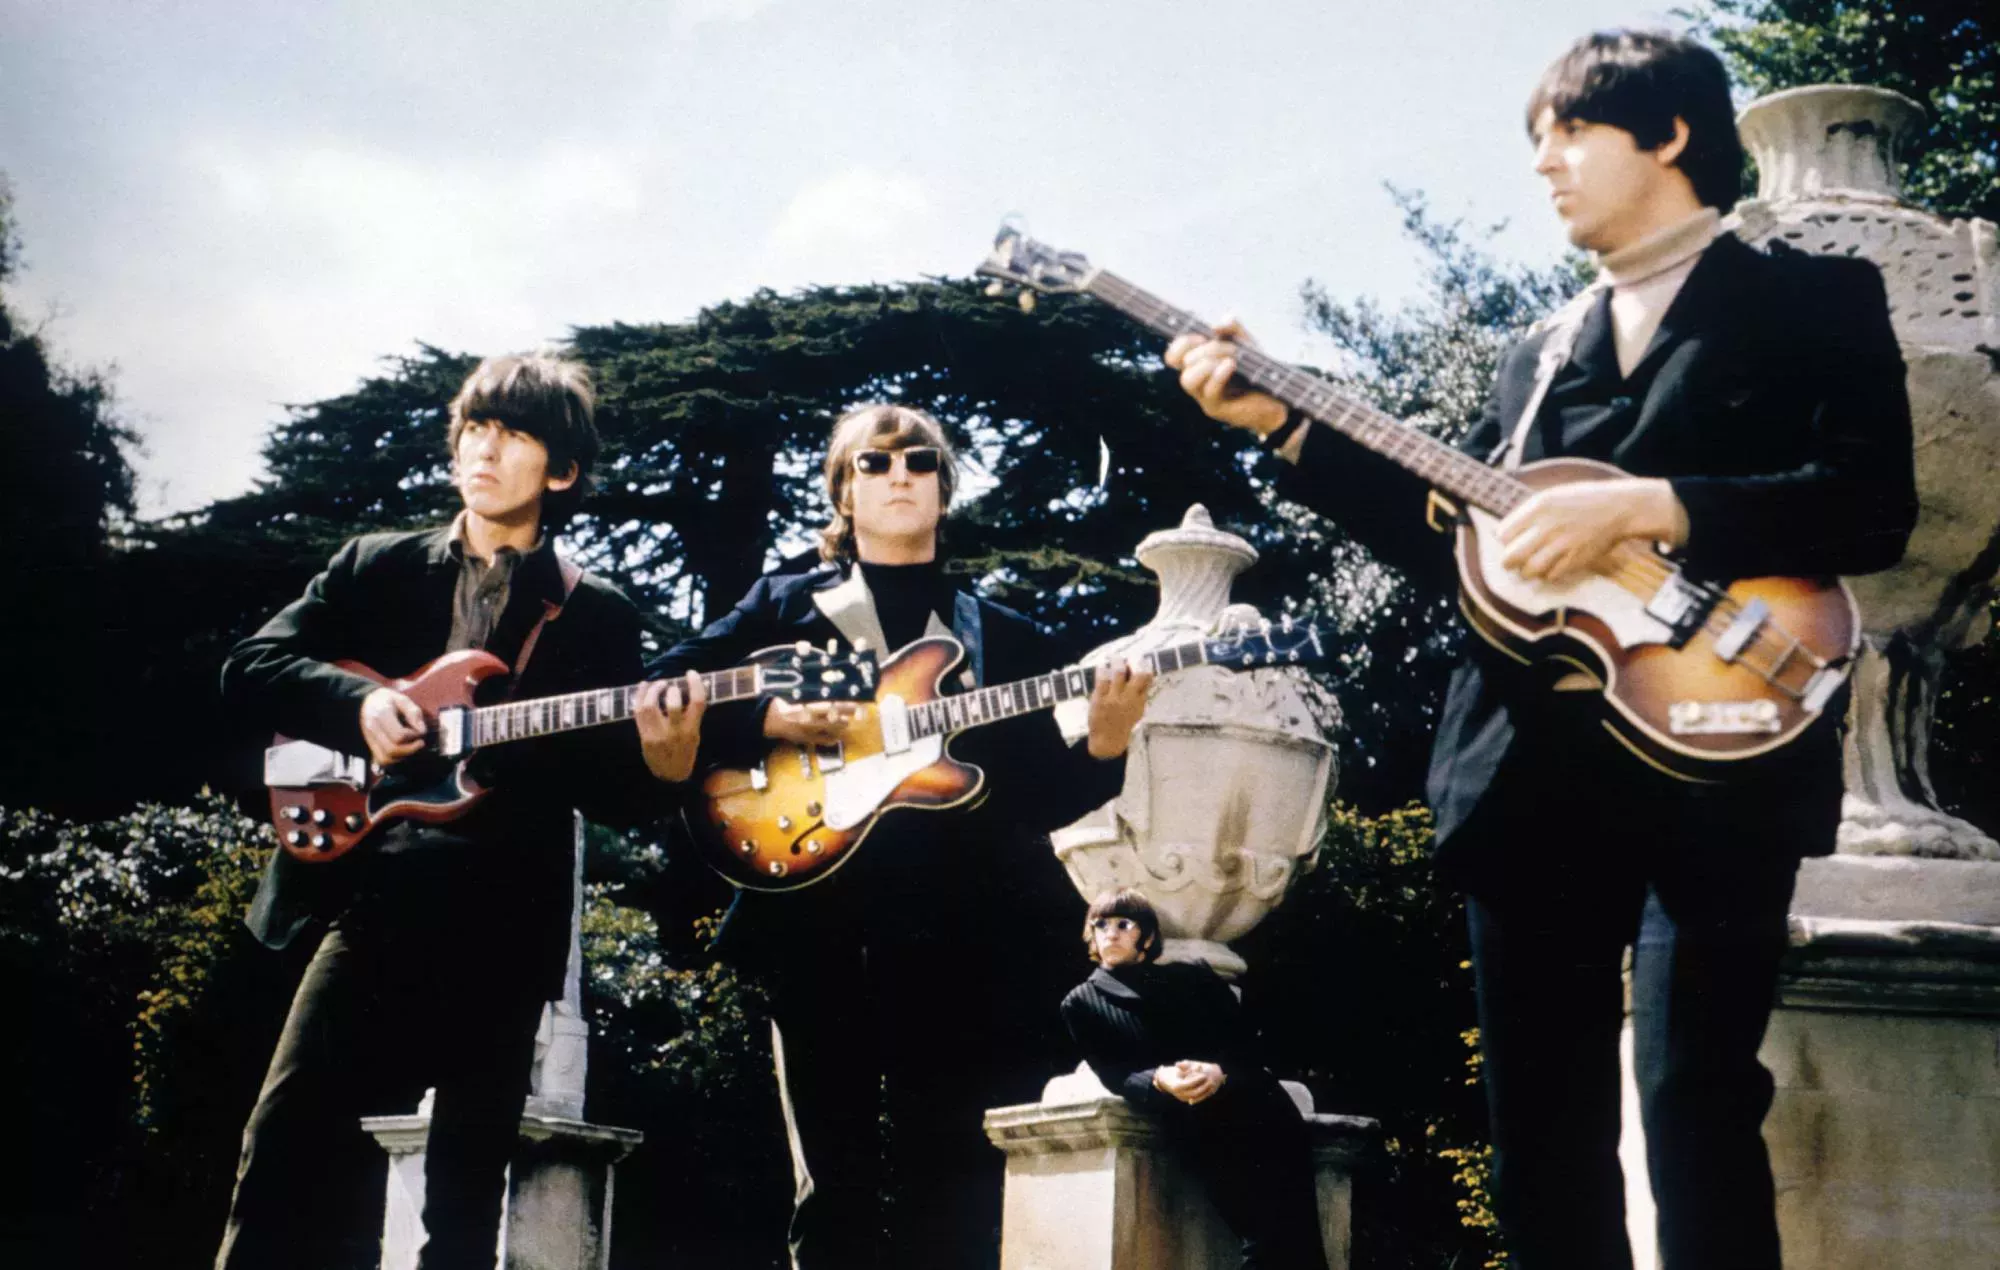 La edición especial de 'Revolver' de los Beatles saldrá a la venta el próximo mes